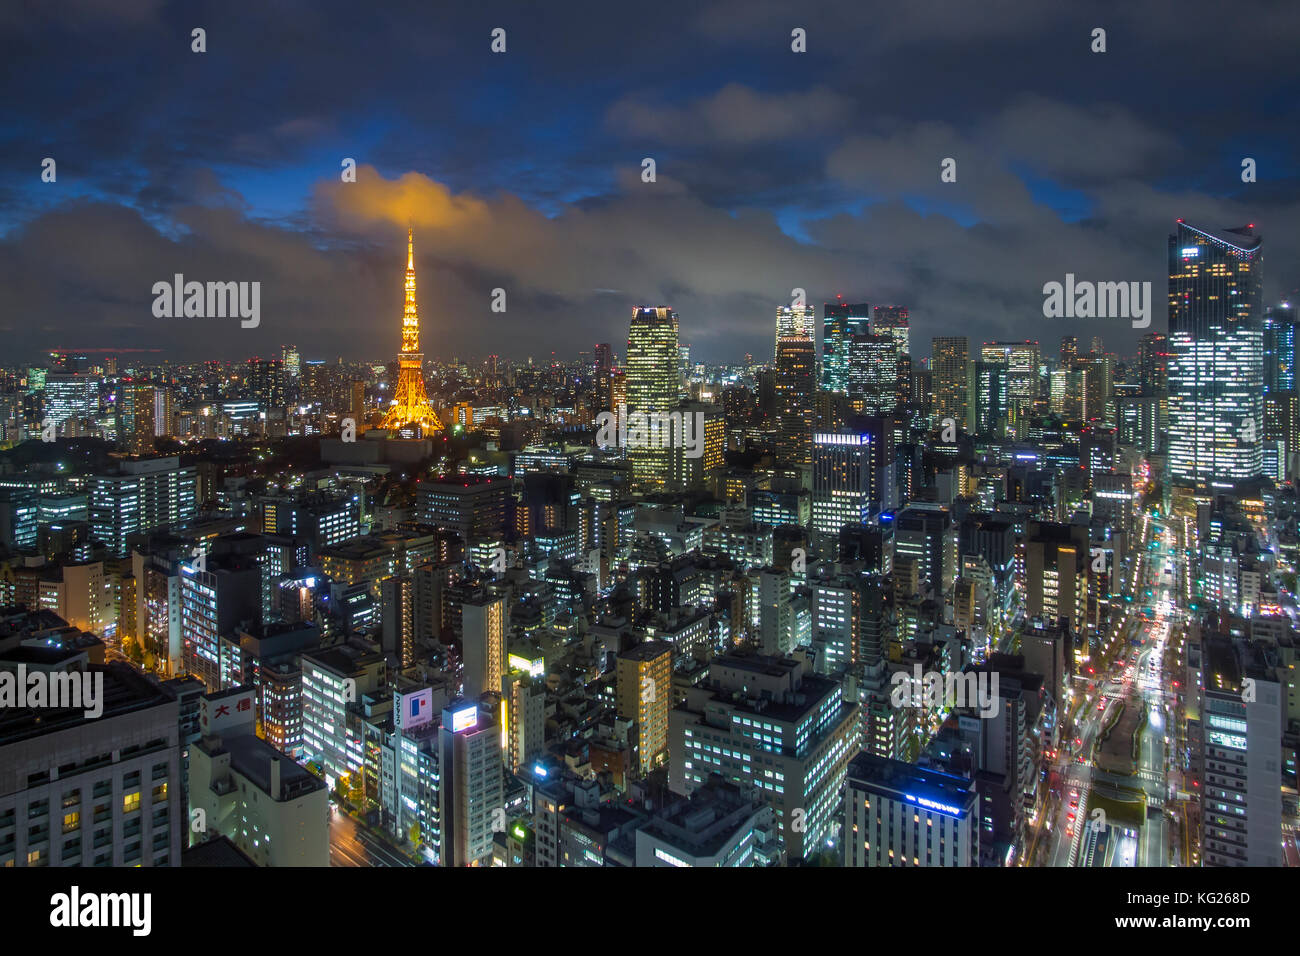 Vista notturna sopraelevata dello skyline della città e dell'iconica Tokyo Tower illuminata, Tokyo, Giappone, Asia Foto Stock